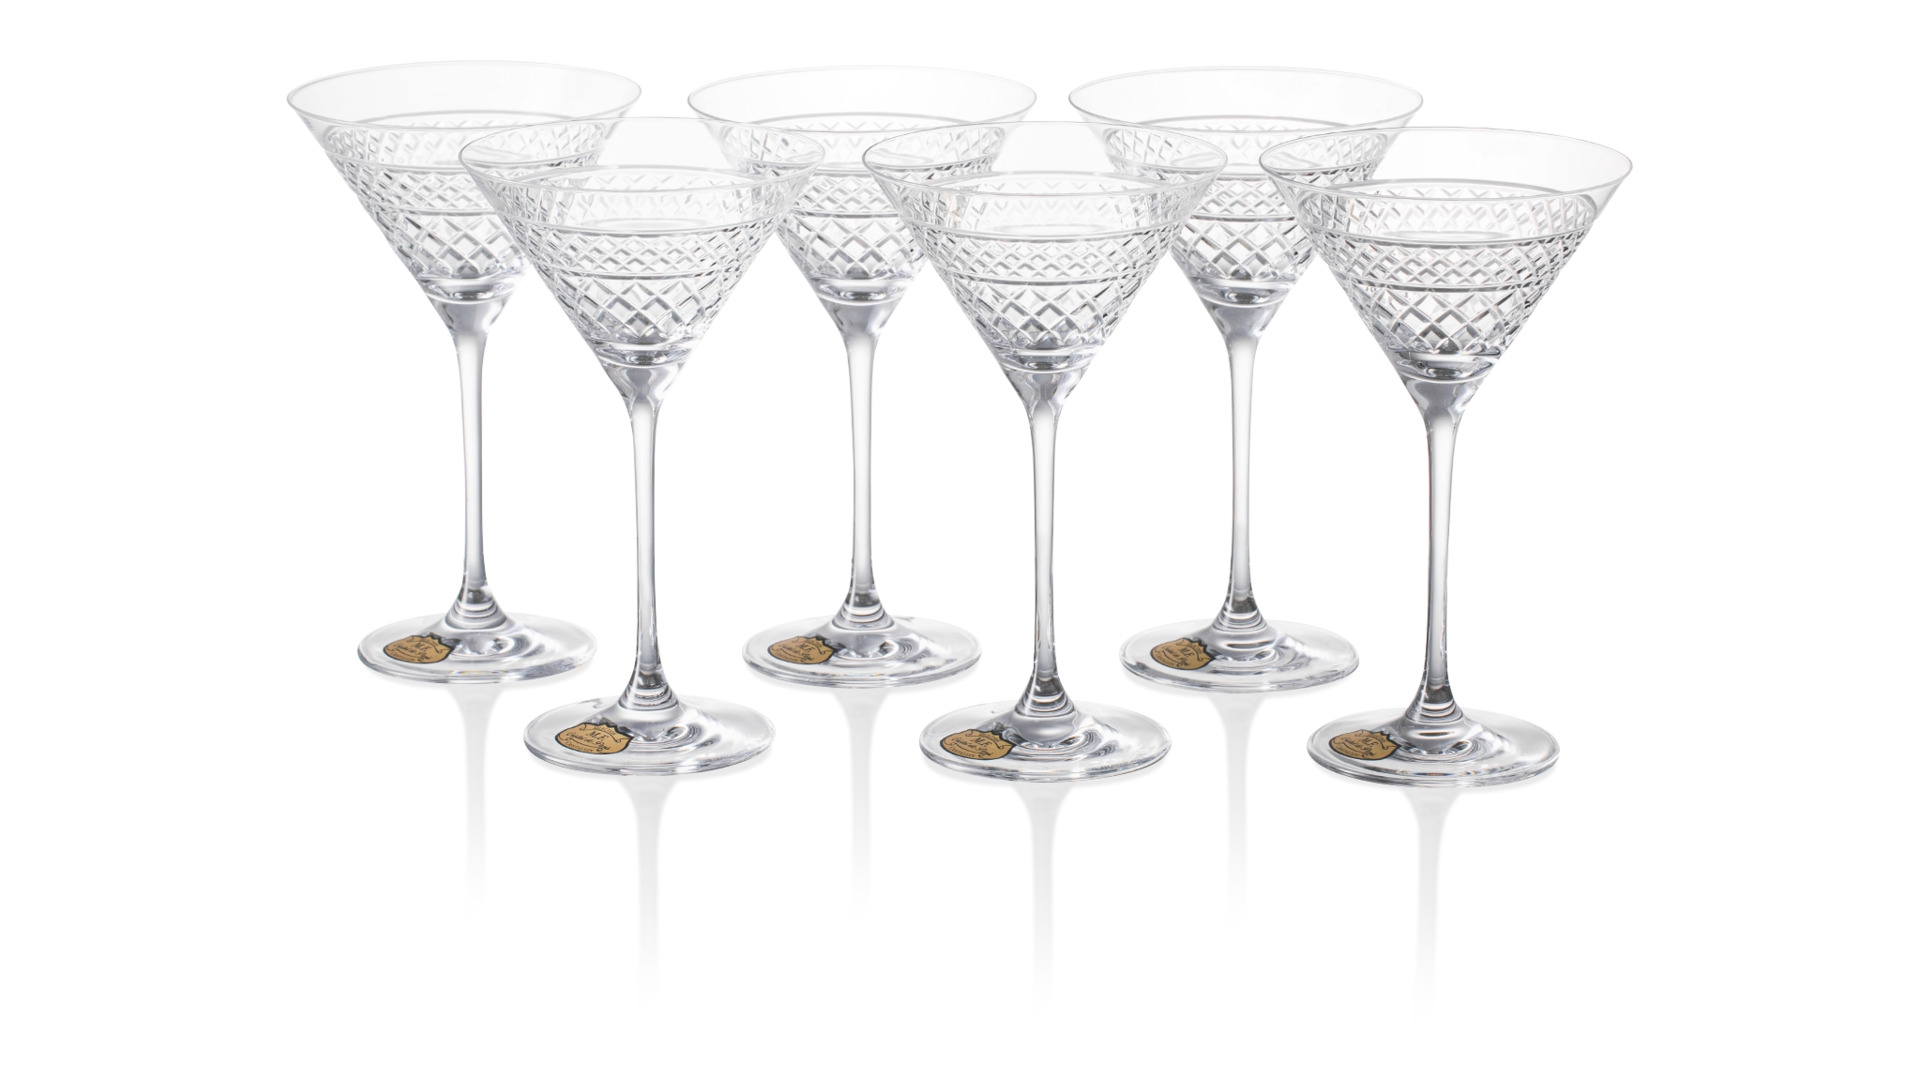 Набор бокалов для коктейля Cristal de Paris Король Георг 280 мл, 6 шт, хрусталь